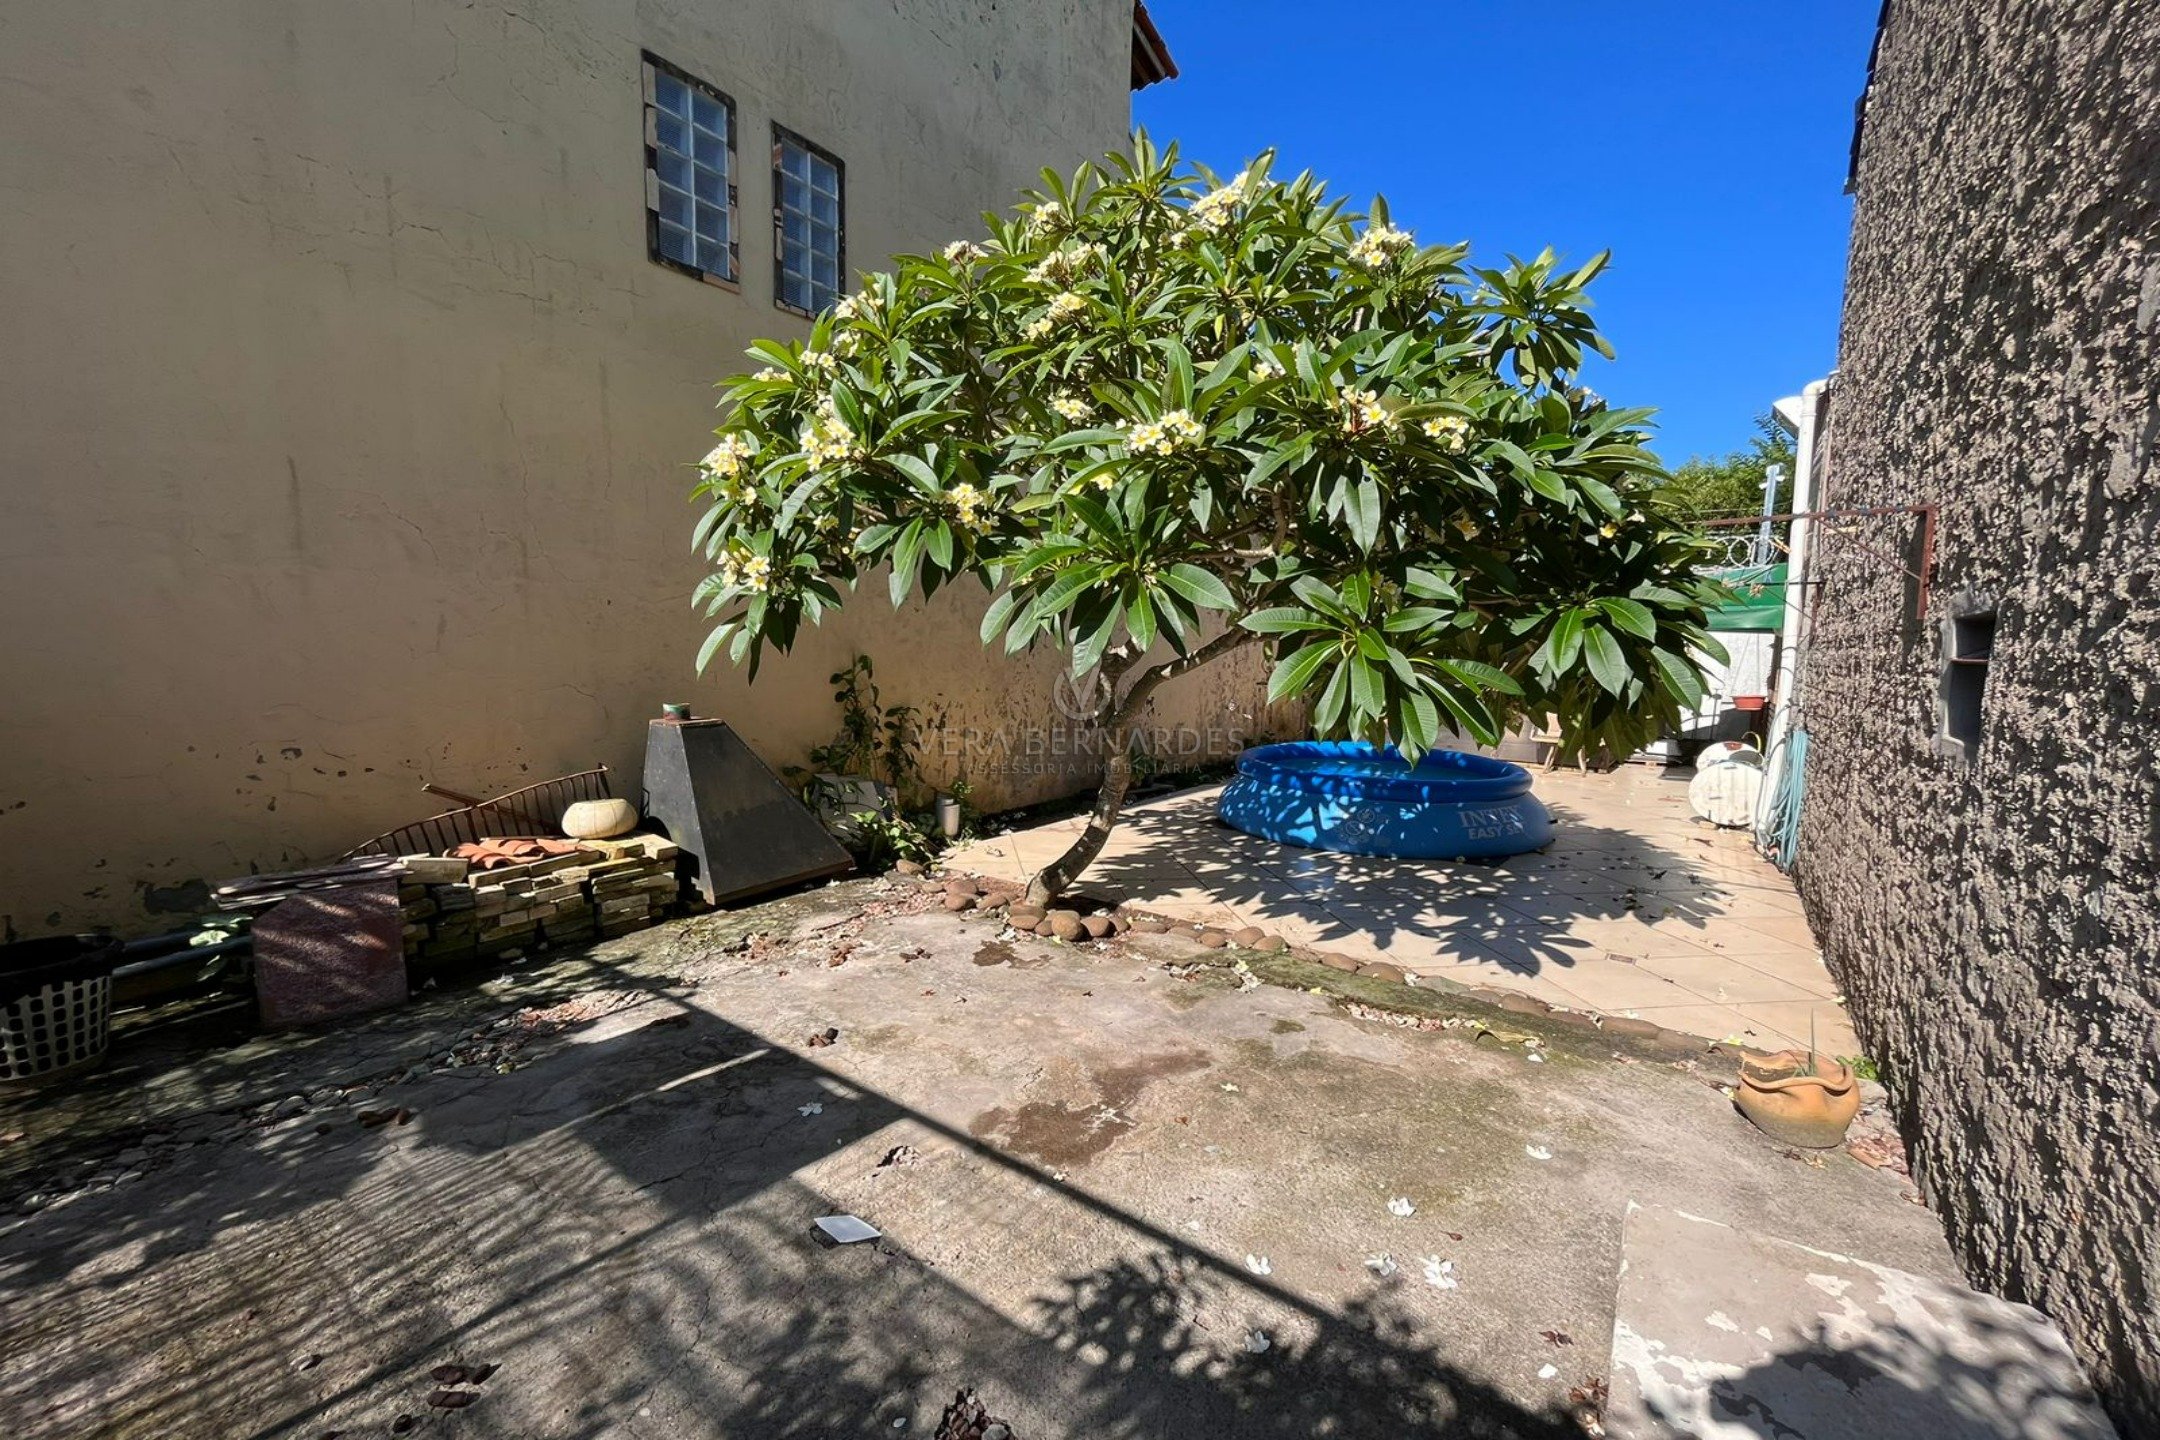 Terreno em Condomínio à venda com 462m² no bairro Hípica, Zona Sul de Porto Alegre